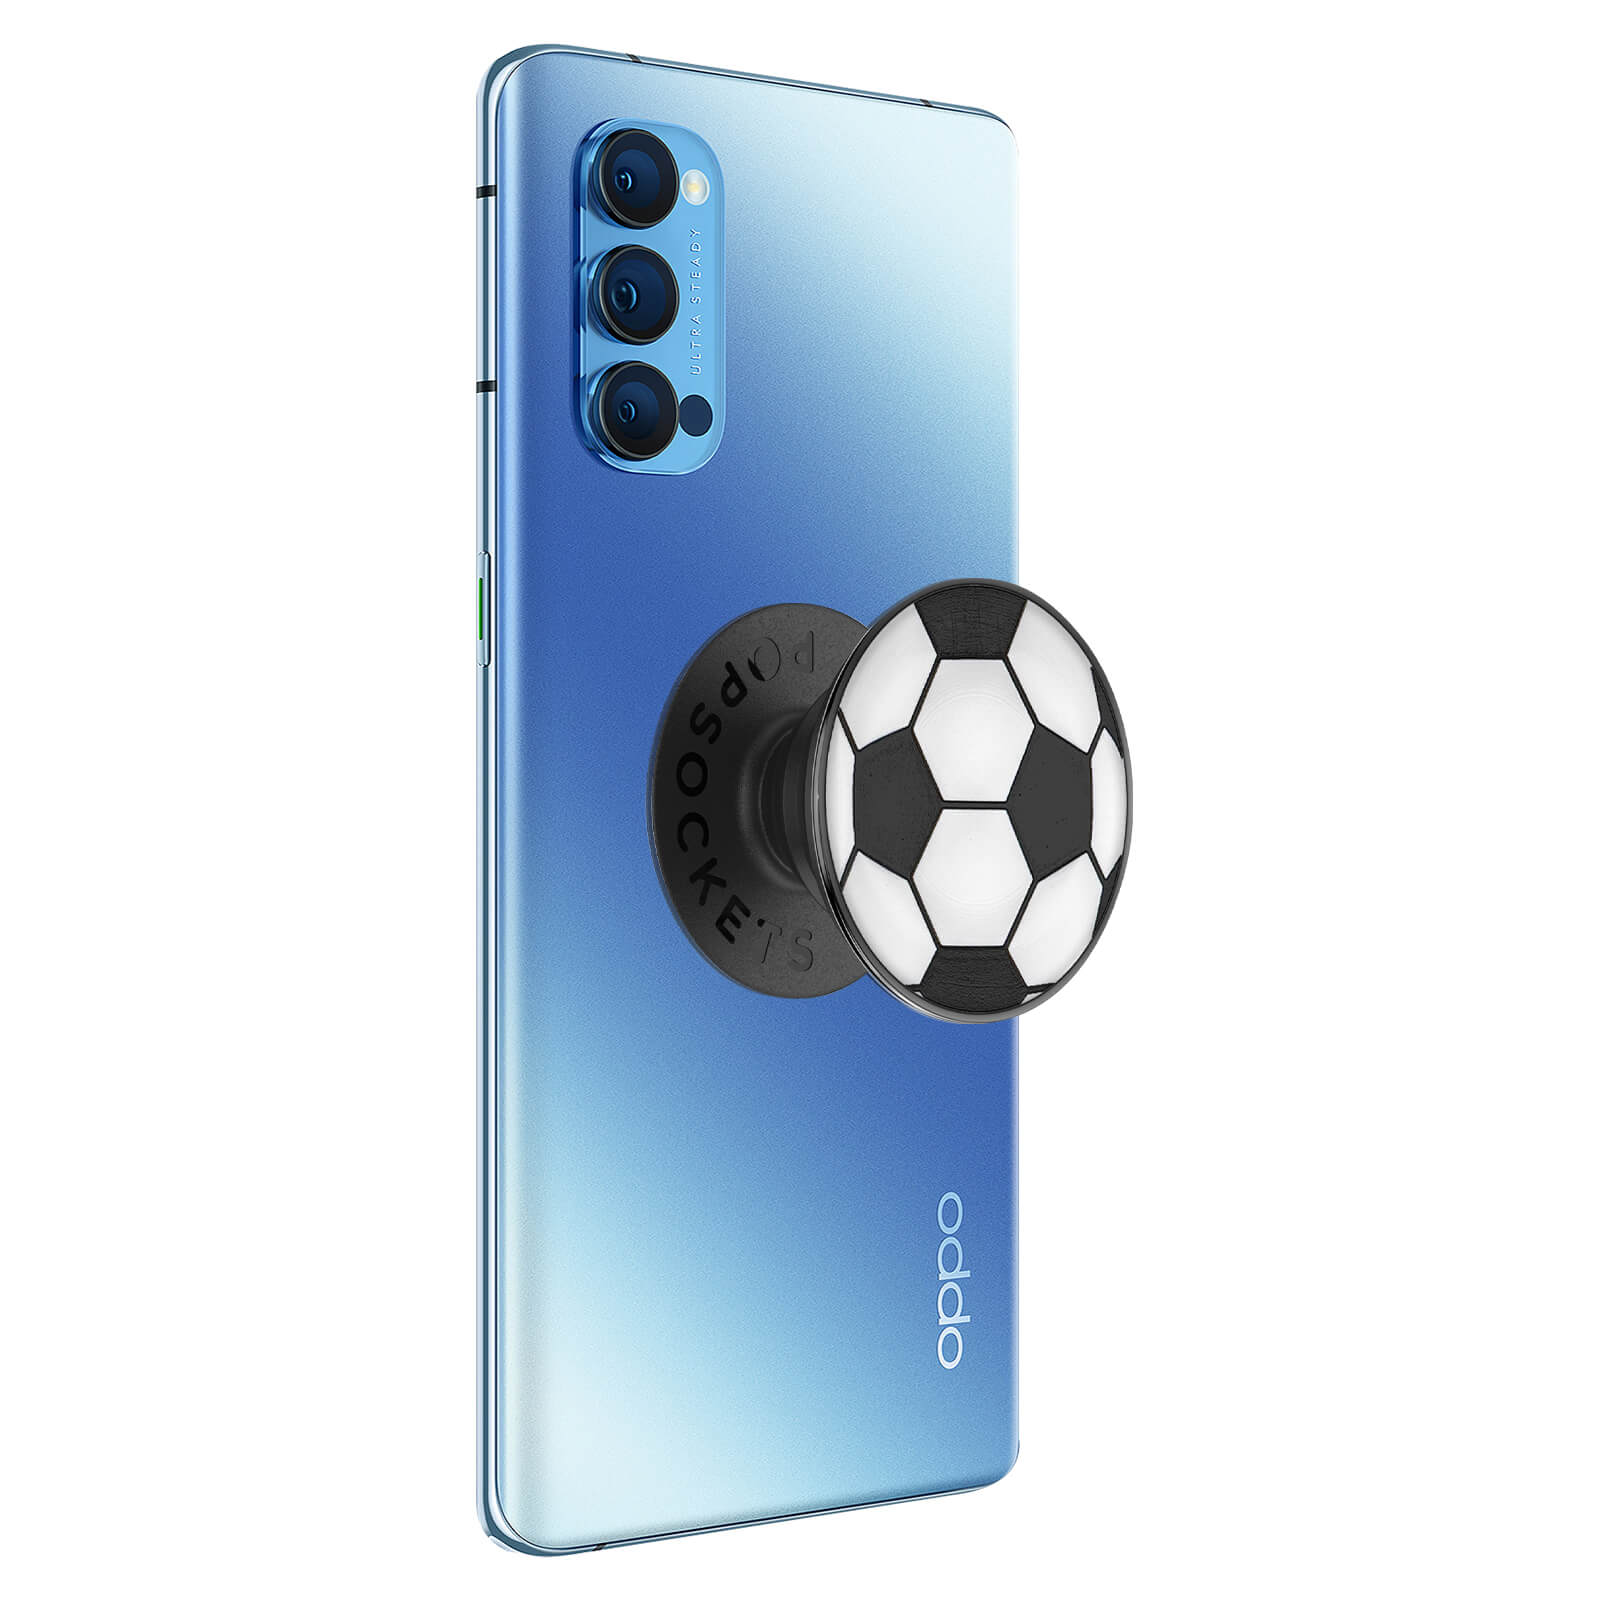 POPSOCKETS Handy-Griff mit Soccer Ball Handyhalterung, Design Bunt